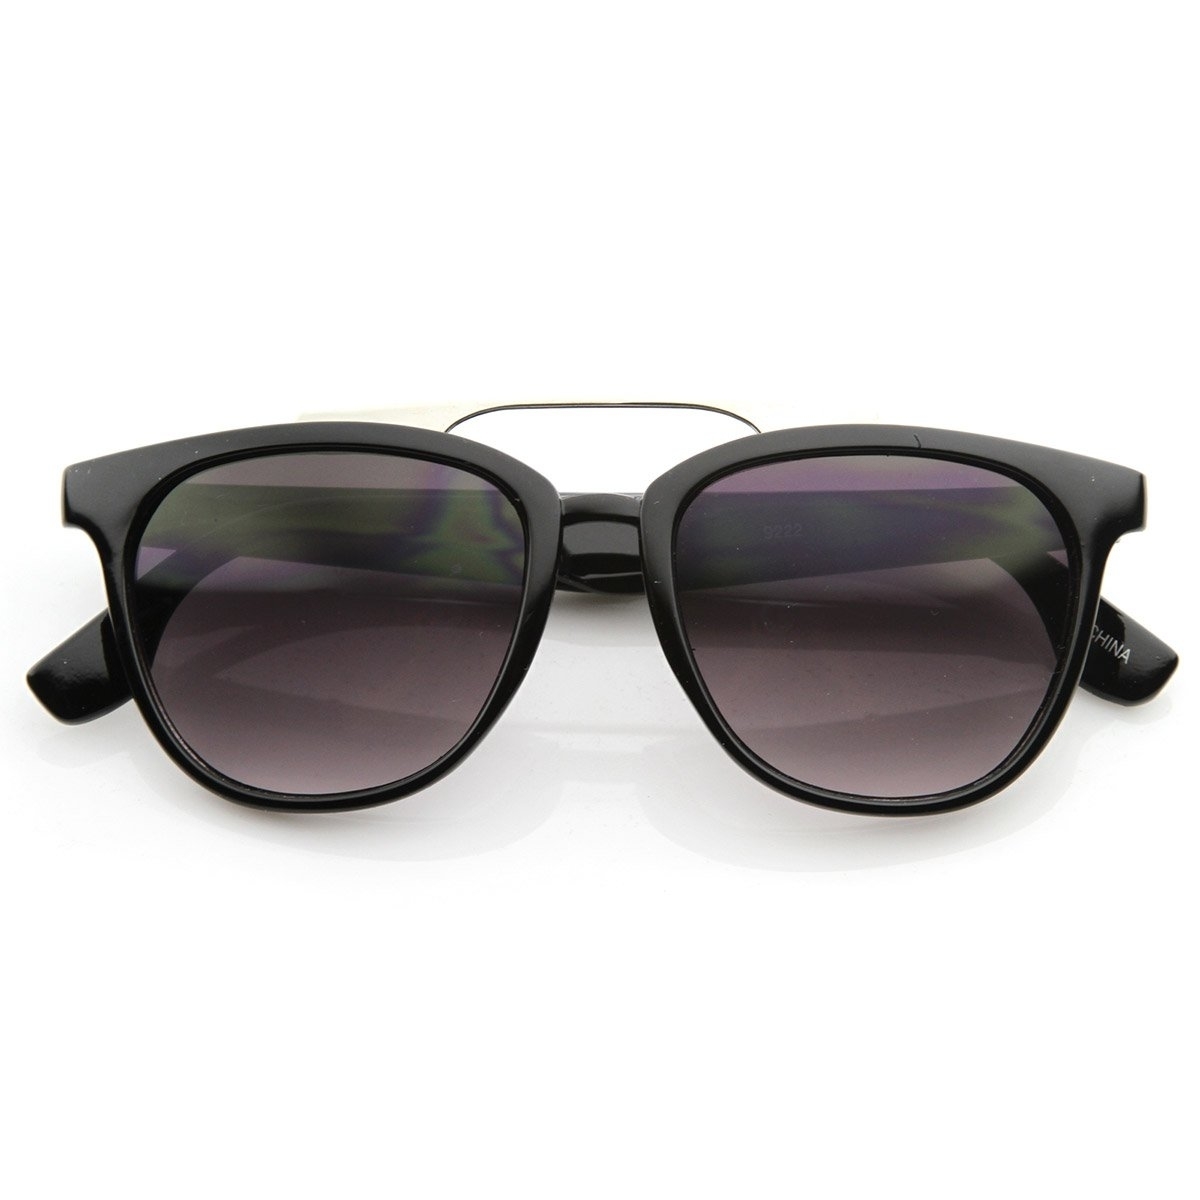 Vintage Inspired Fashion Horn Rimmed Horn Rimmed Sunglasses With Metal Crossbar - Black Lavender-Lens